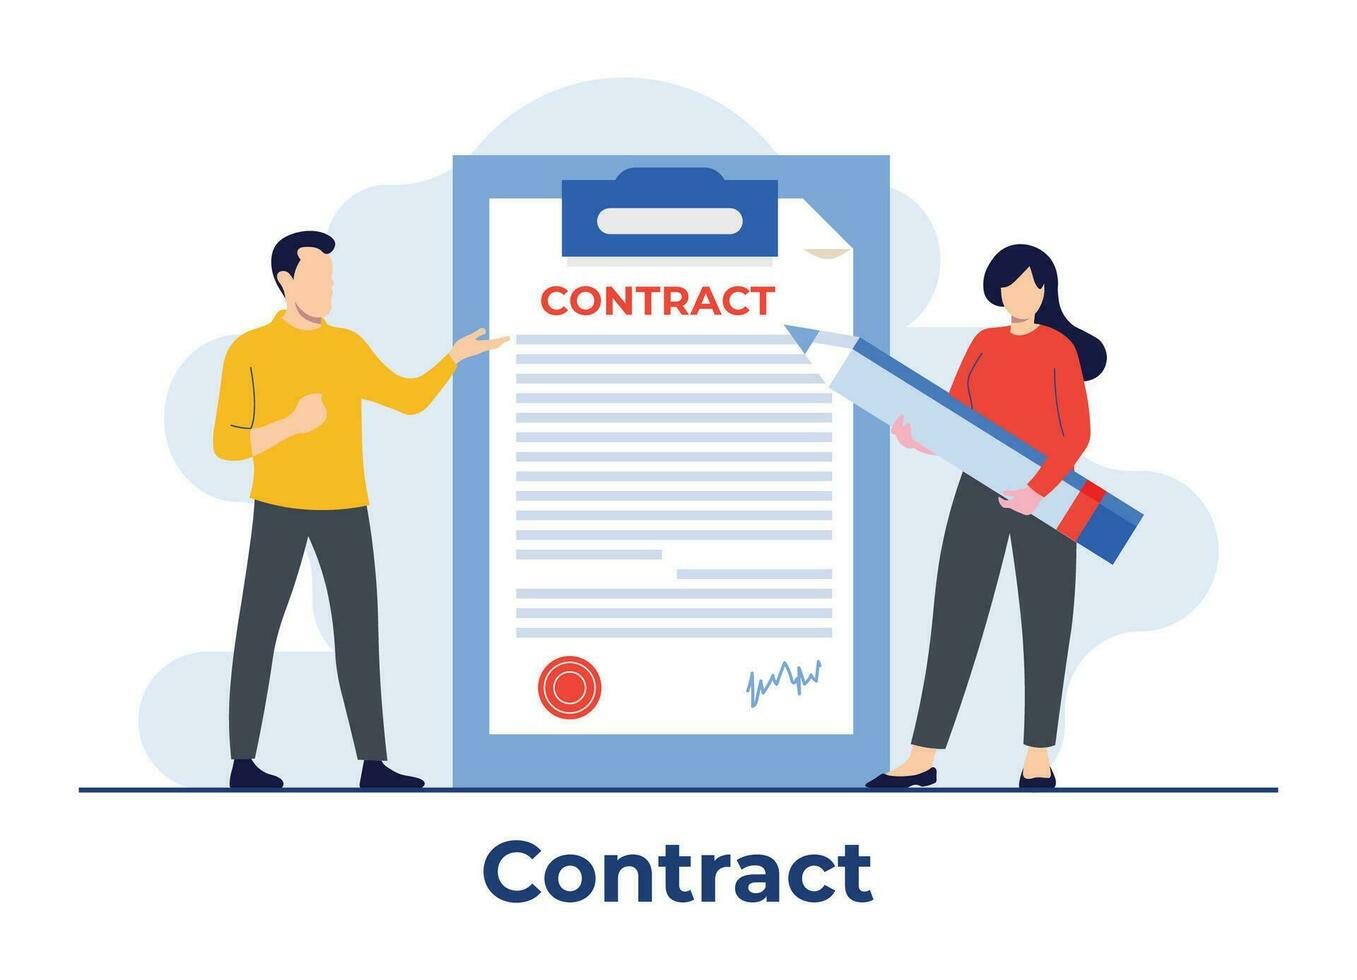 firmado papel acuerdo contrato plano ilustración vector plantilla, acuerdo, documento, personas firma contratos, haciendo un negocio trato, acuerdos documento con firma y aprobación sello